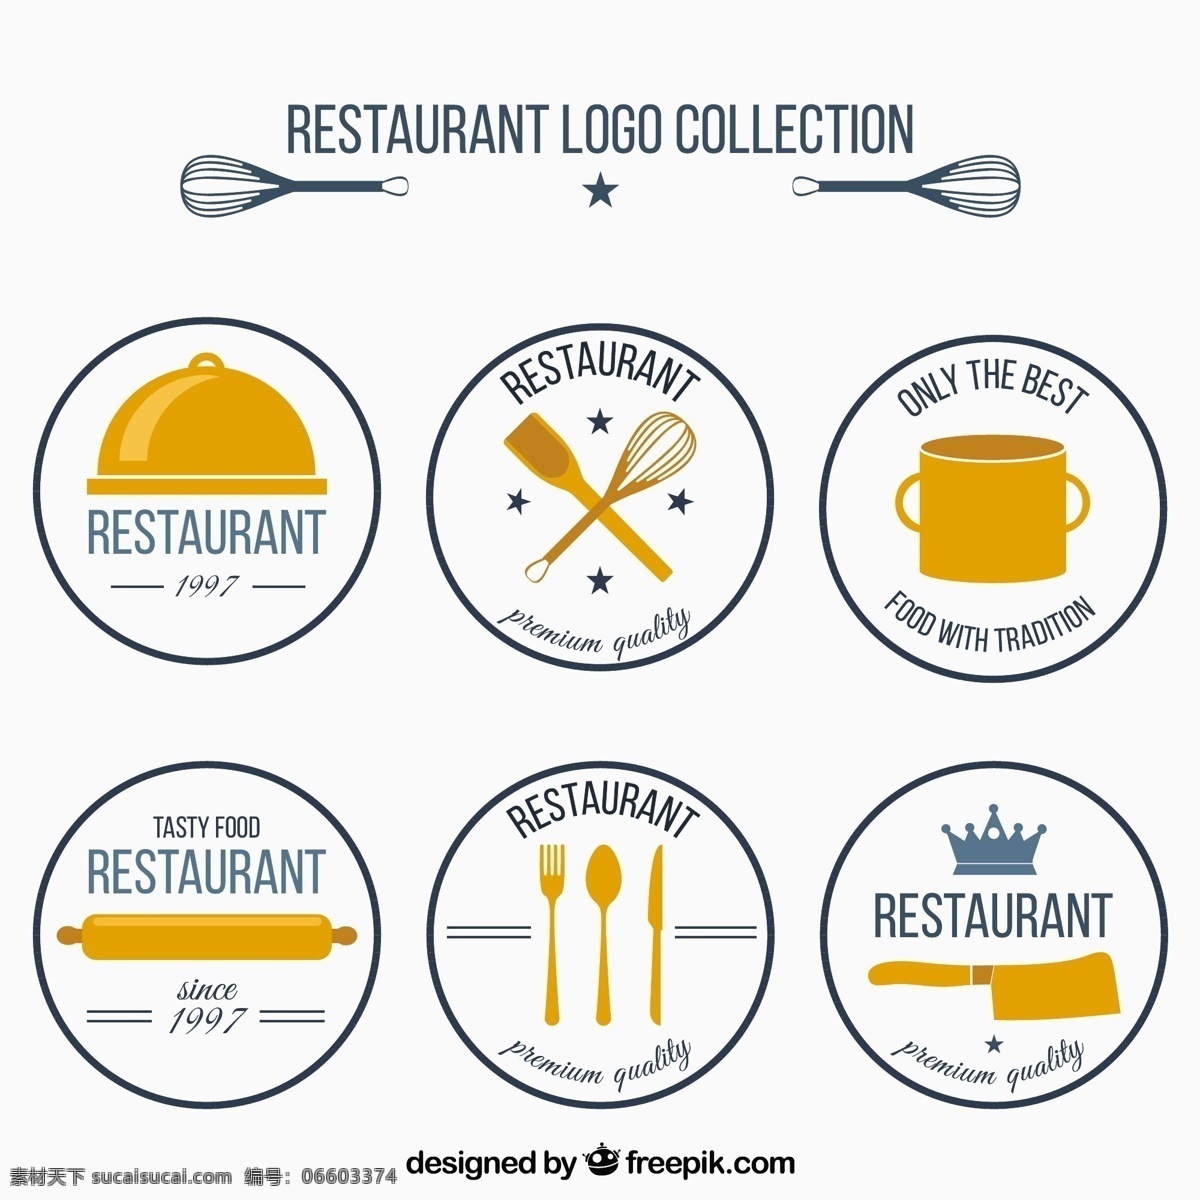 复古 风格 六轮 餐厅 标志 集合 食品 古董 企业 厨房 厨师 烹饪 公司 企业形象 品牌 圆 现代 吃 象征 身份